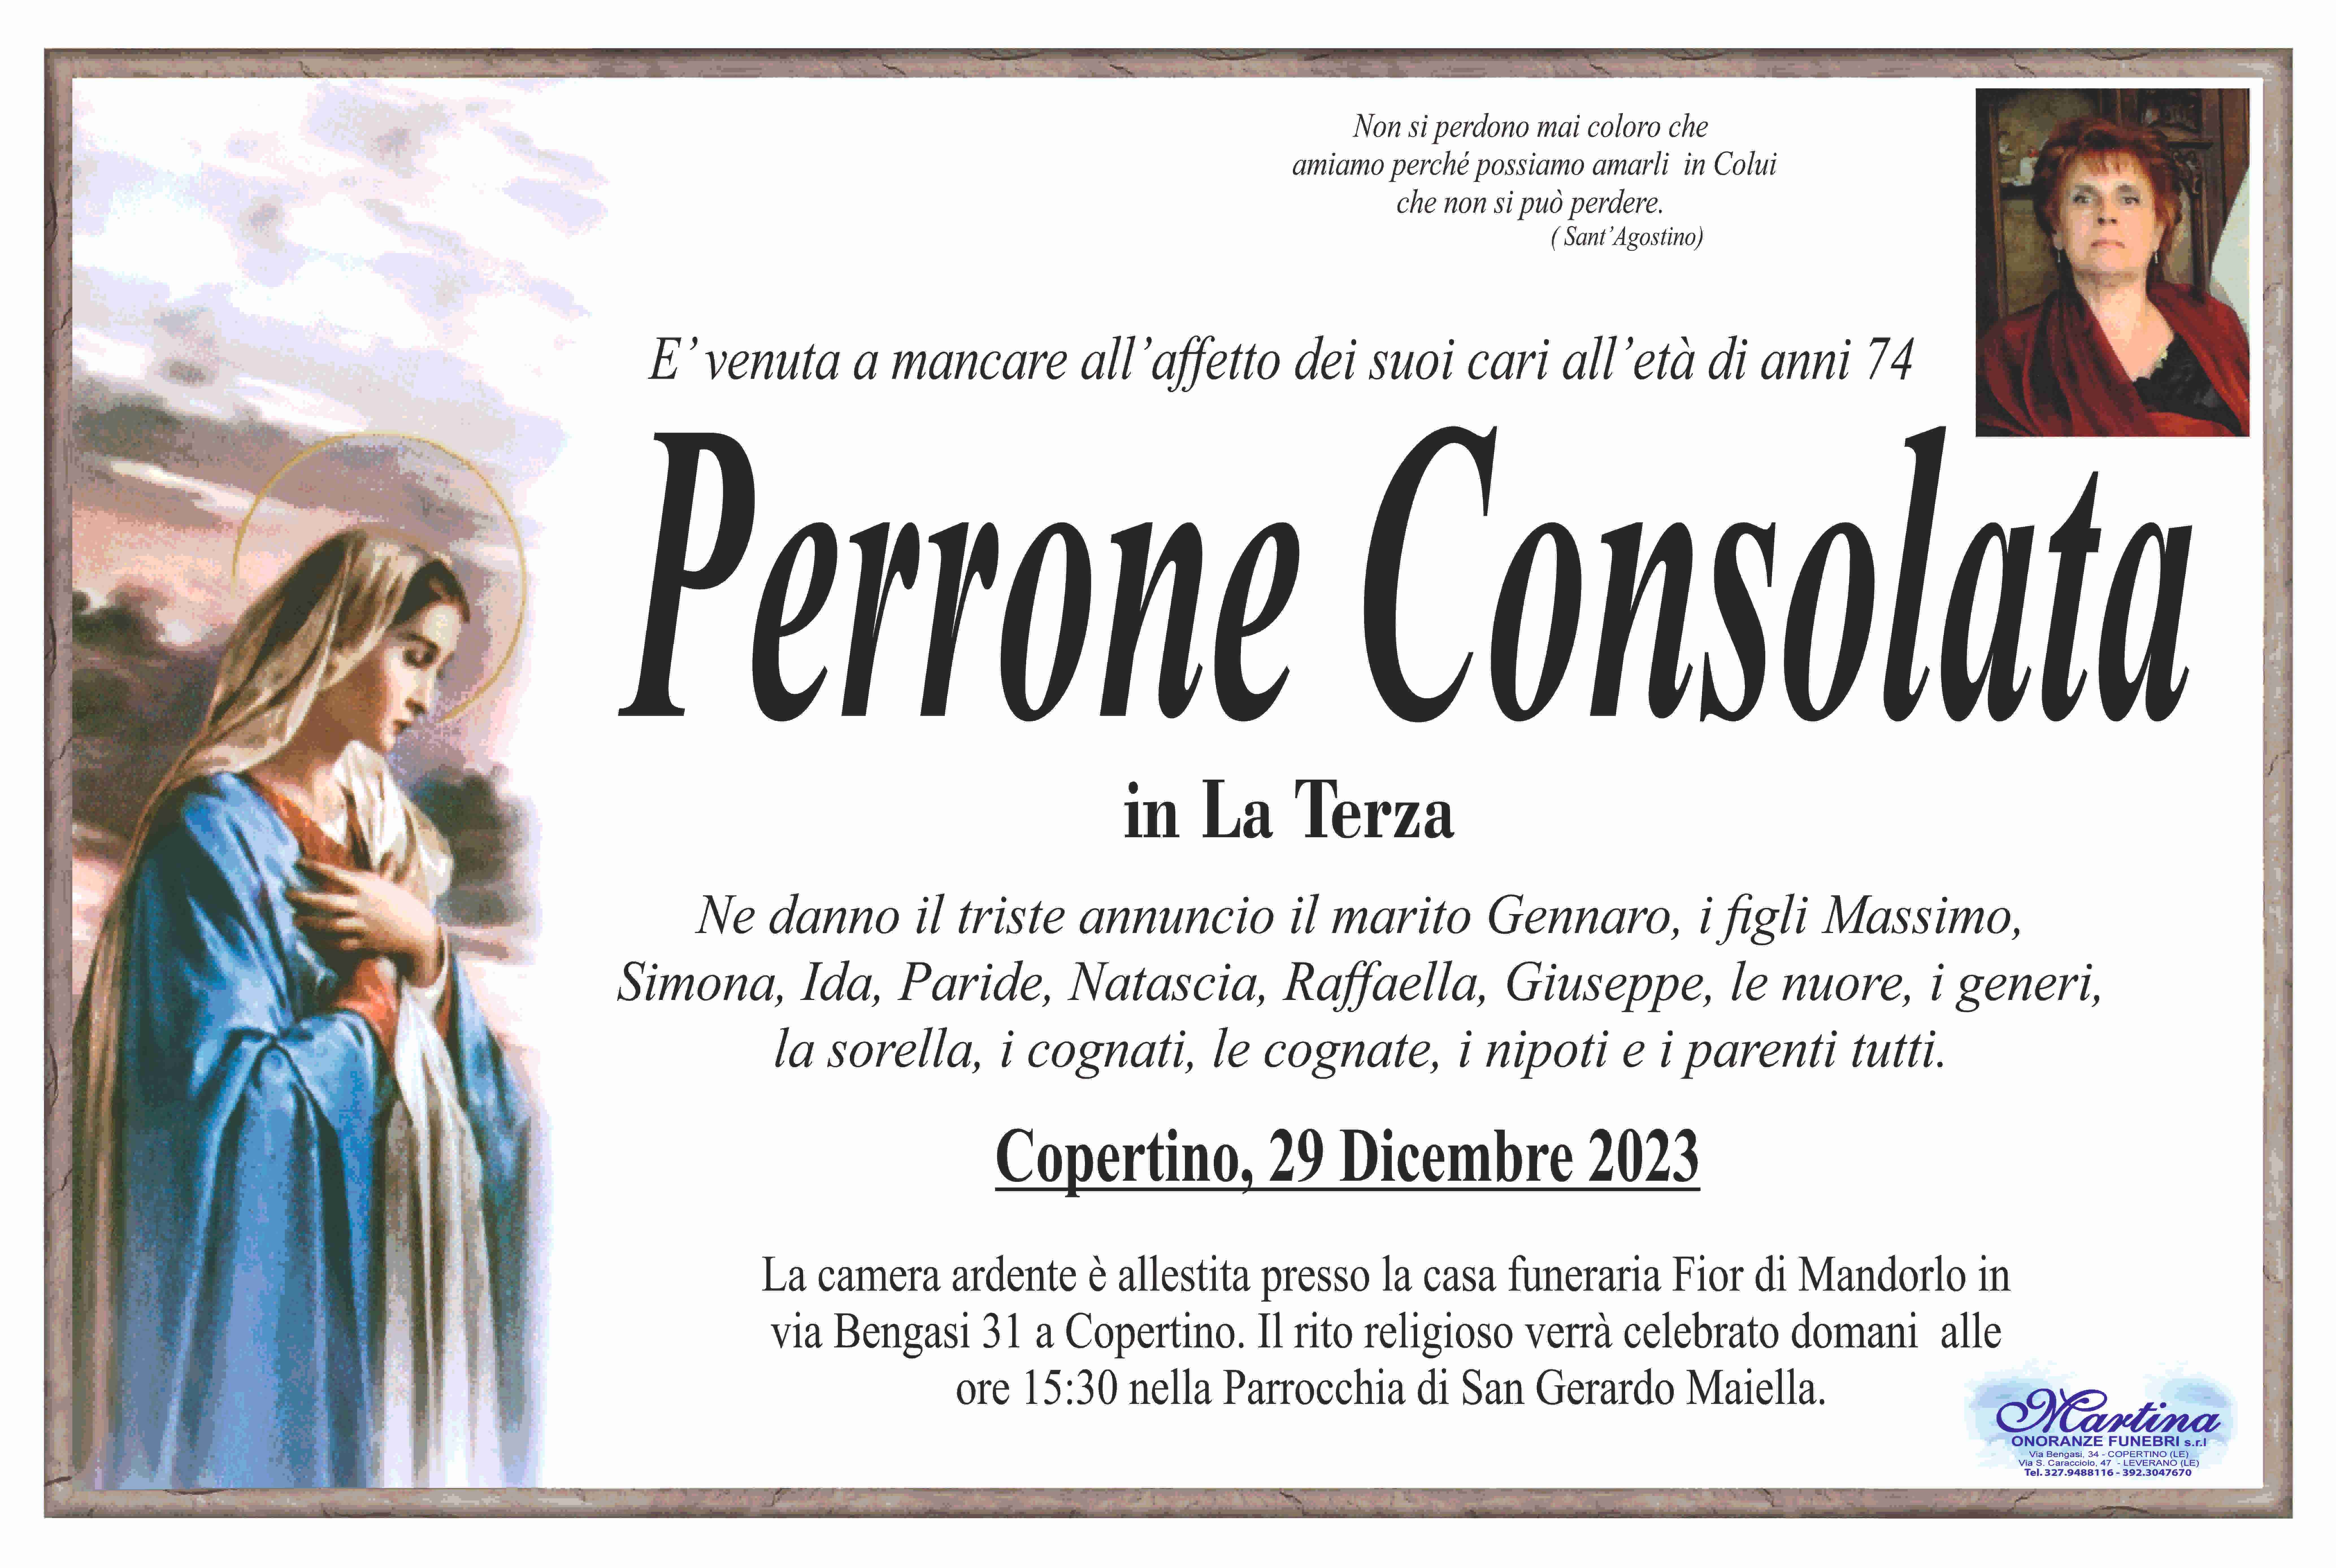 Consolata Perrone